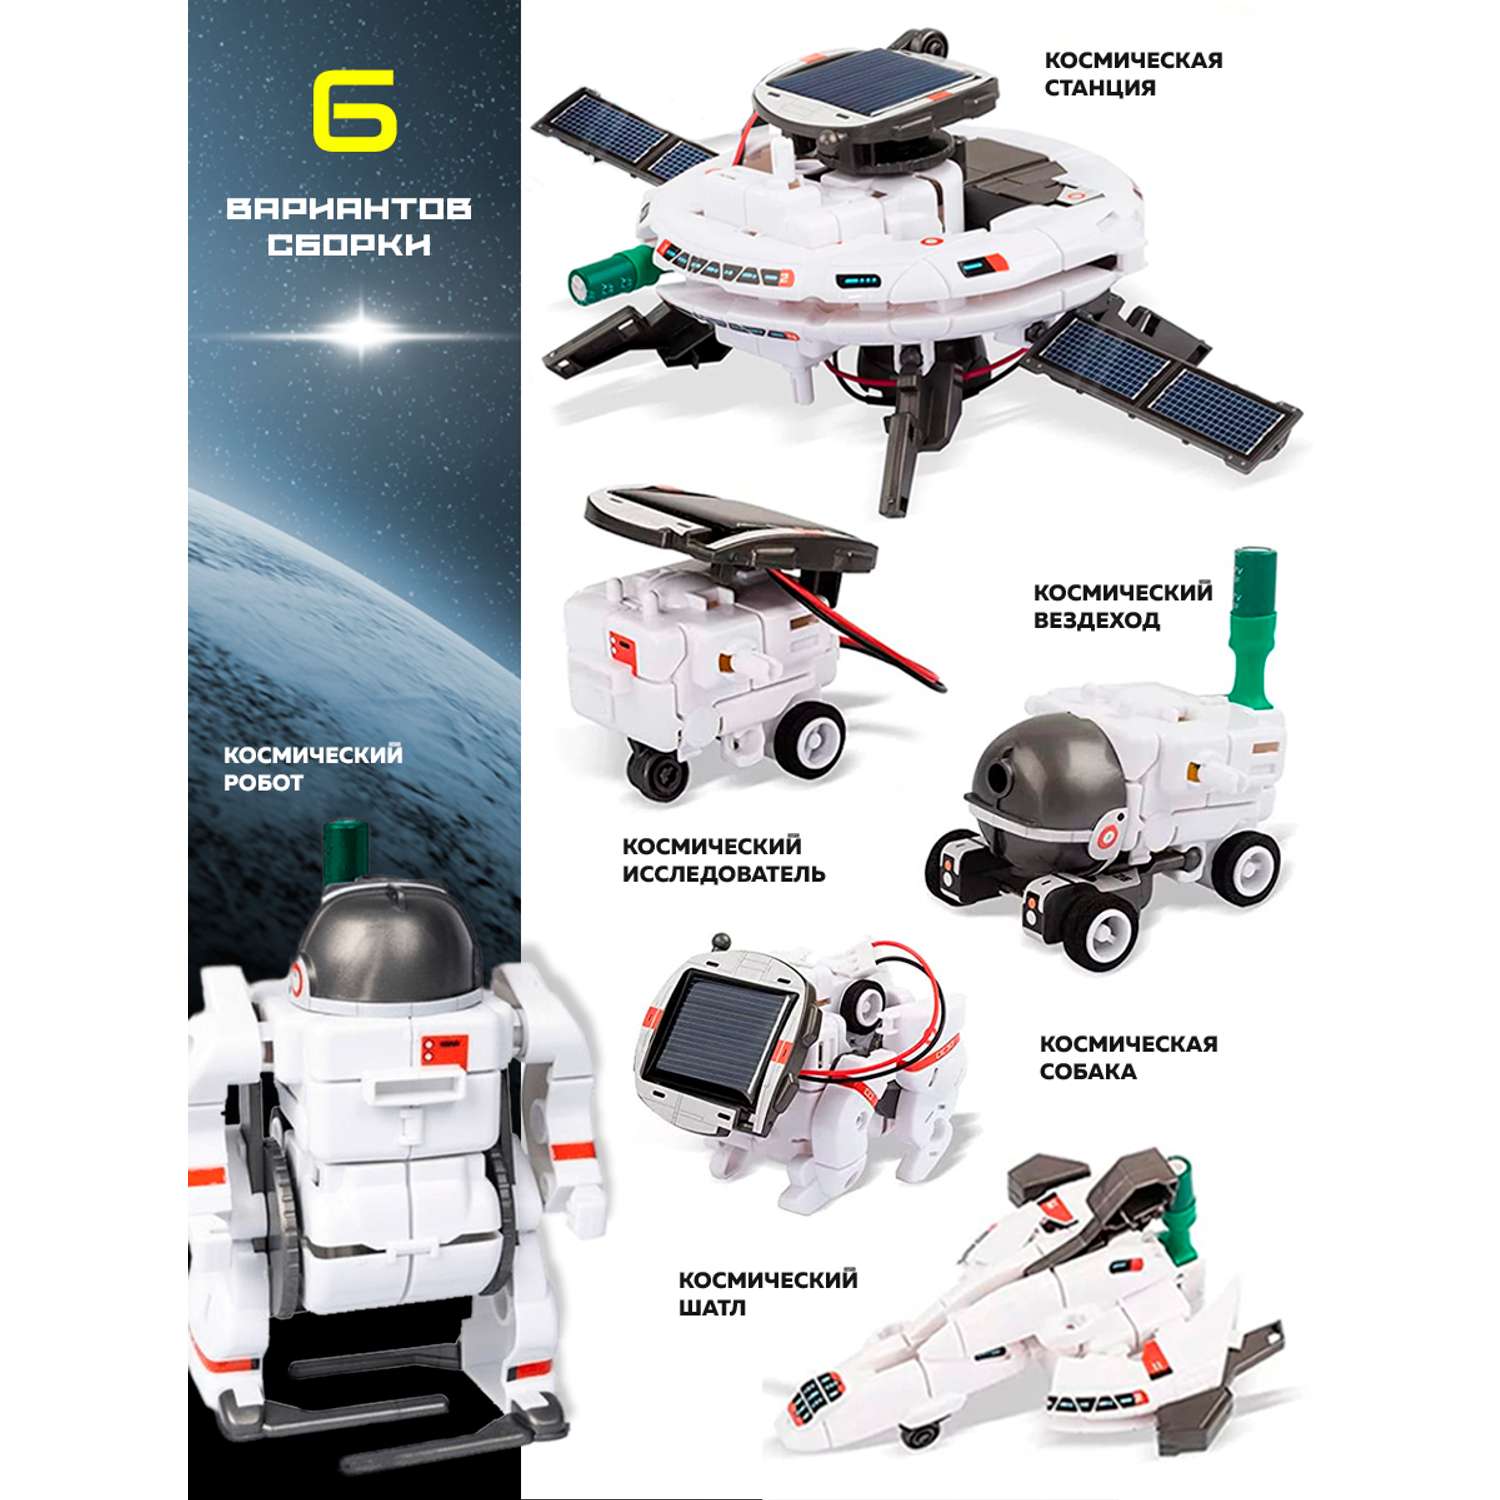 Электронный конструктор Винтик сборная подвижная модель робота на солнечной батарее KD3012 - фото 6